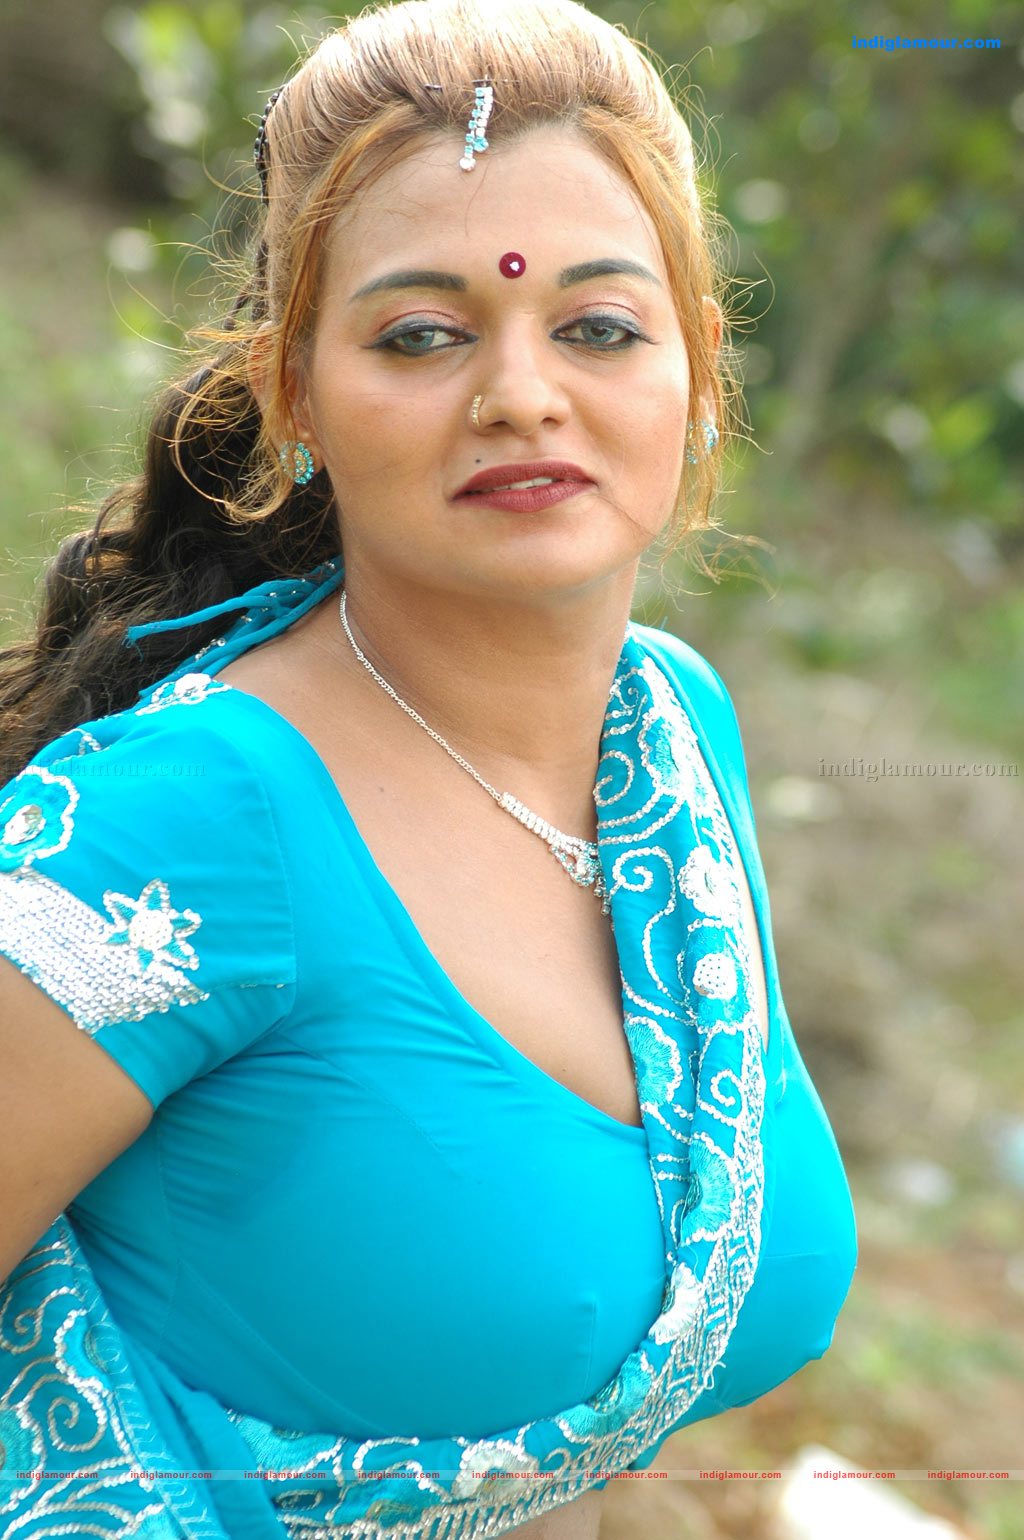 Karuvappaiya Tamil Movie Photos Stills Photo 103005